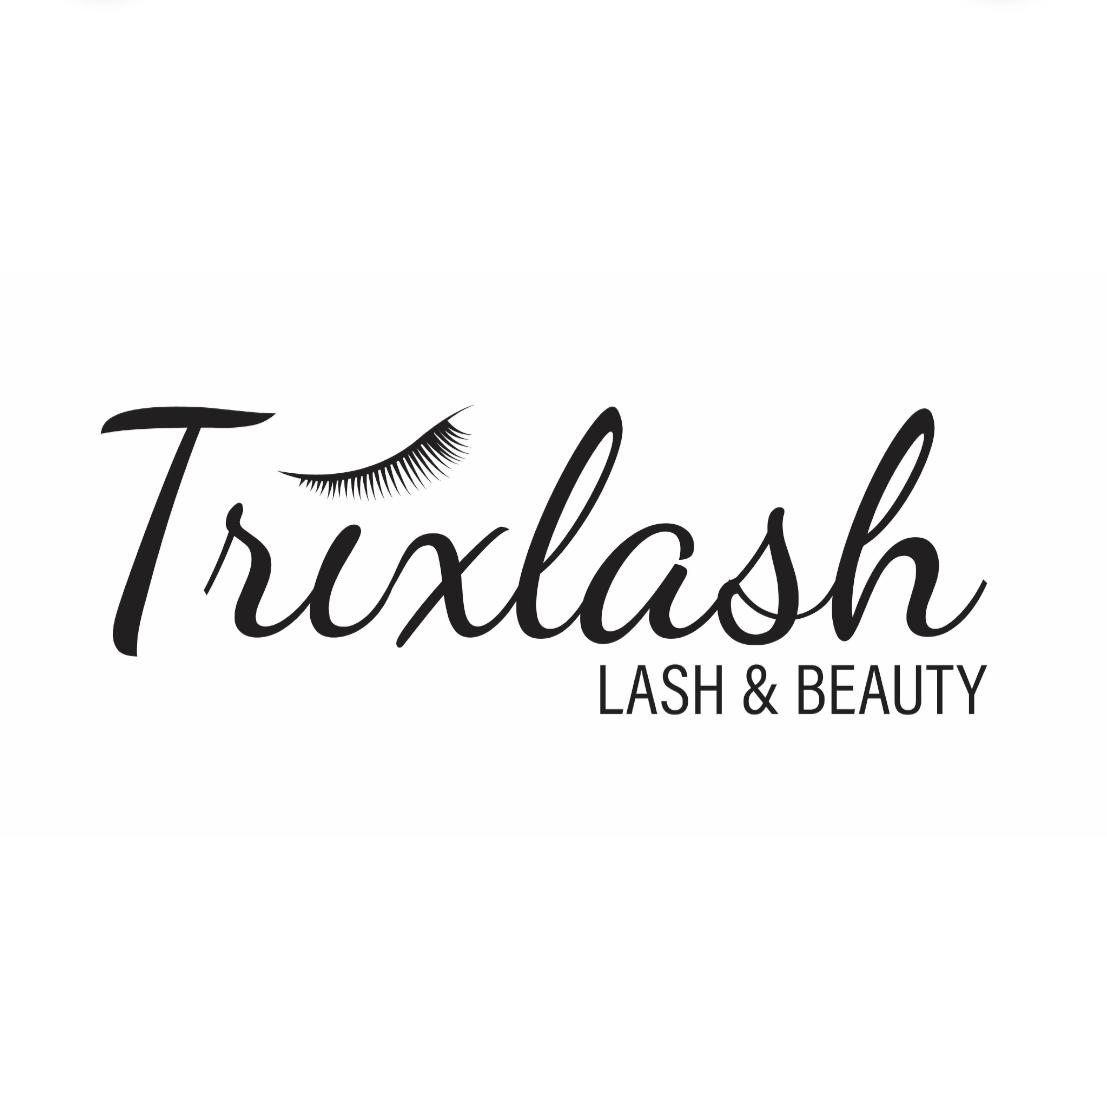 Trixlash's images